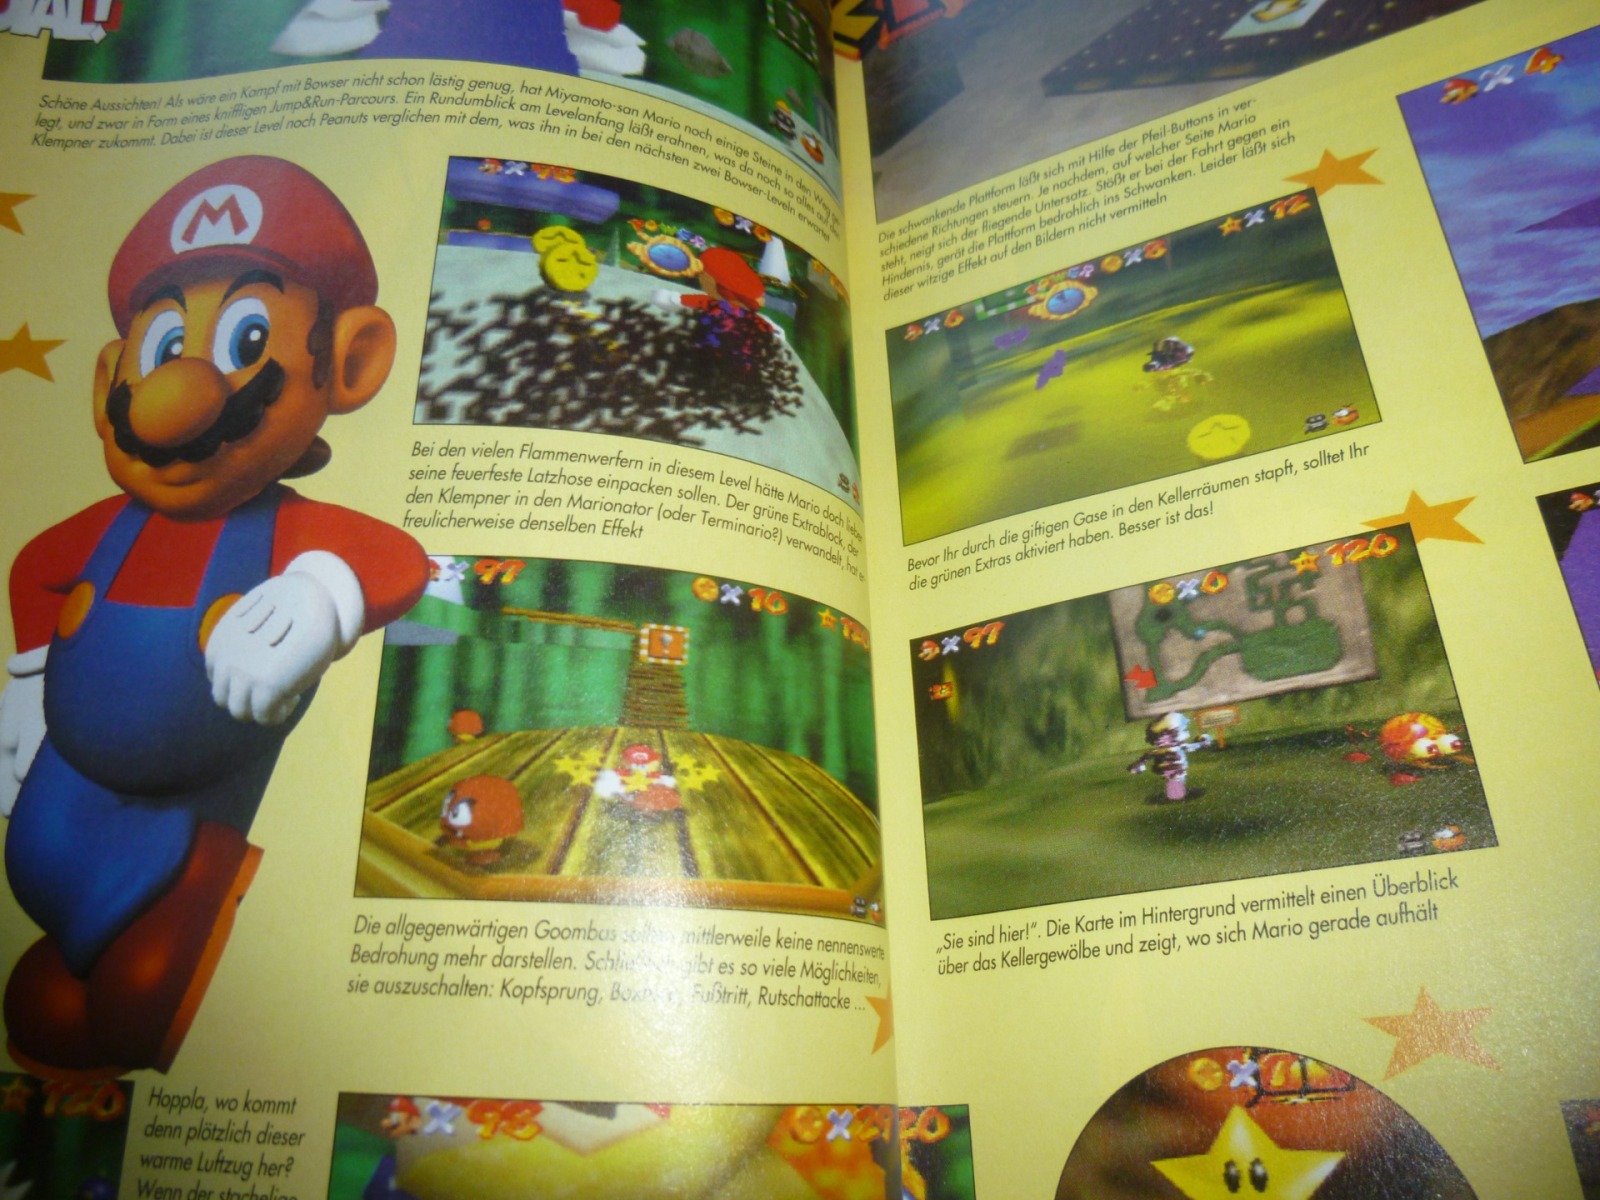 TOTAL Das unabhängige Magazin - 100% Nintendo - Ausgabe 10/96 1996 10